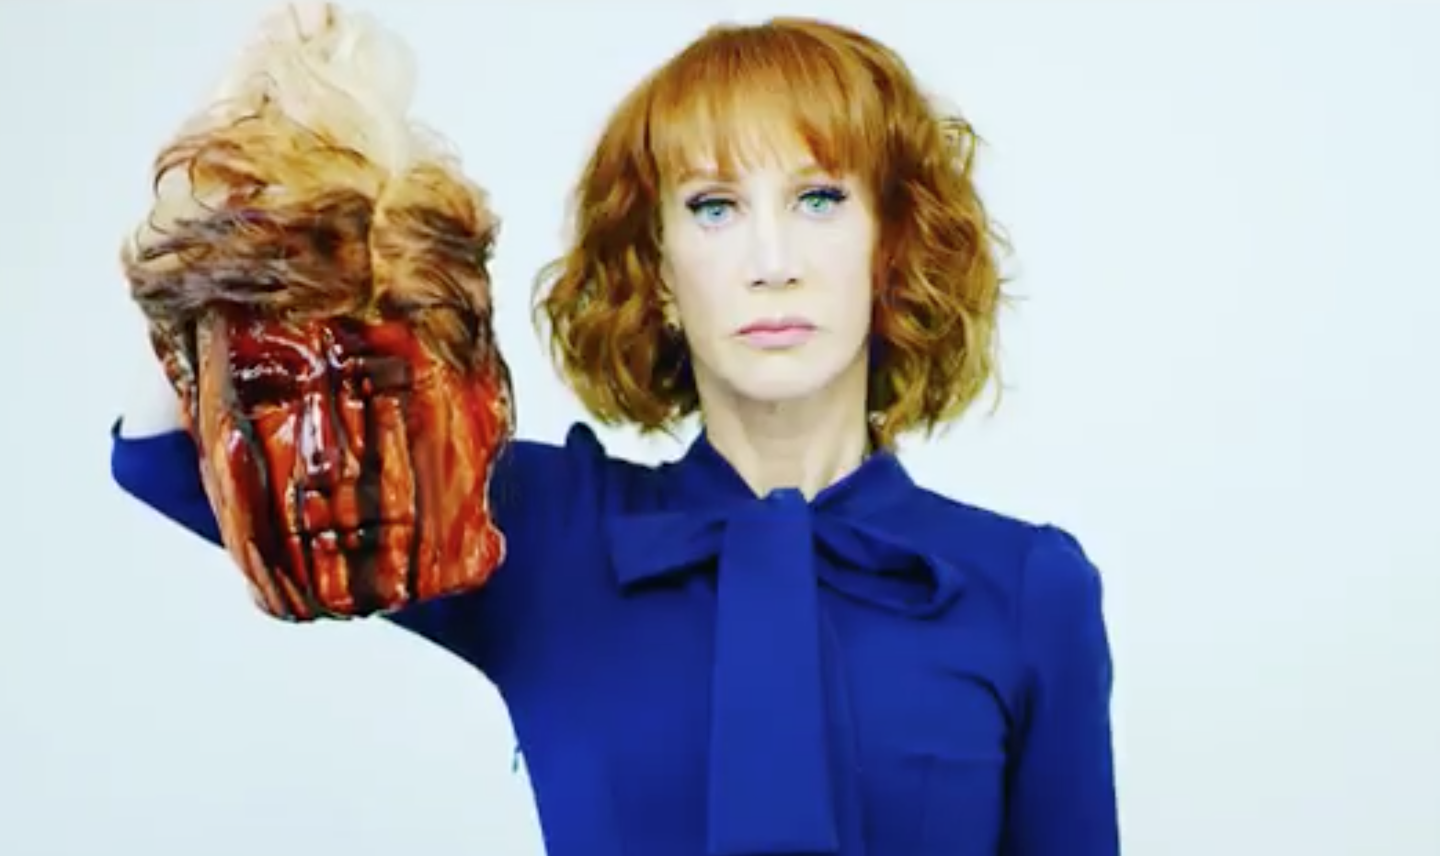 Кэти Гриффин с муляжом отрезанной головы. Фото: кадр из видео.